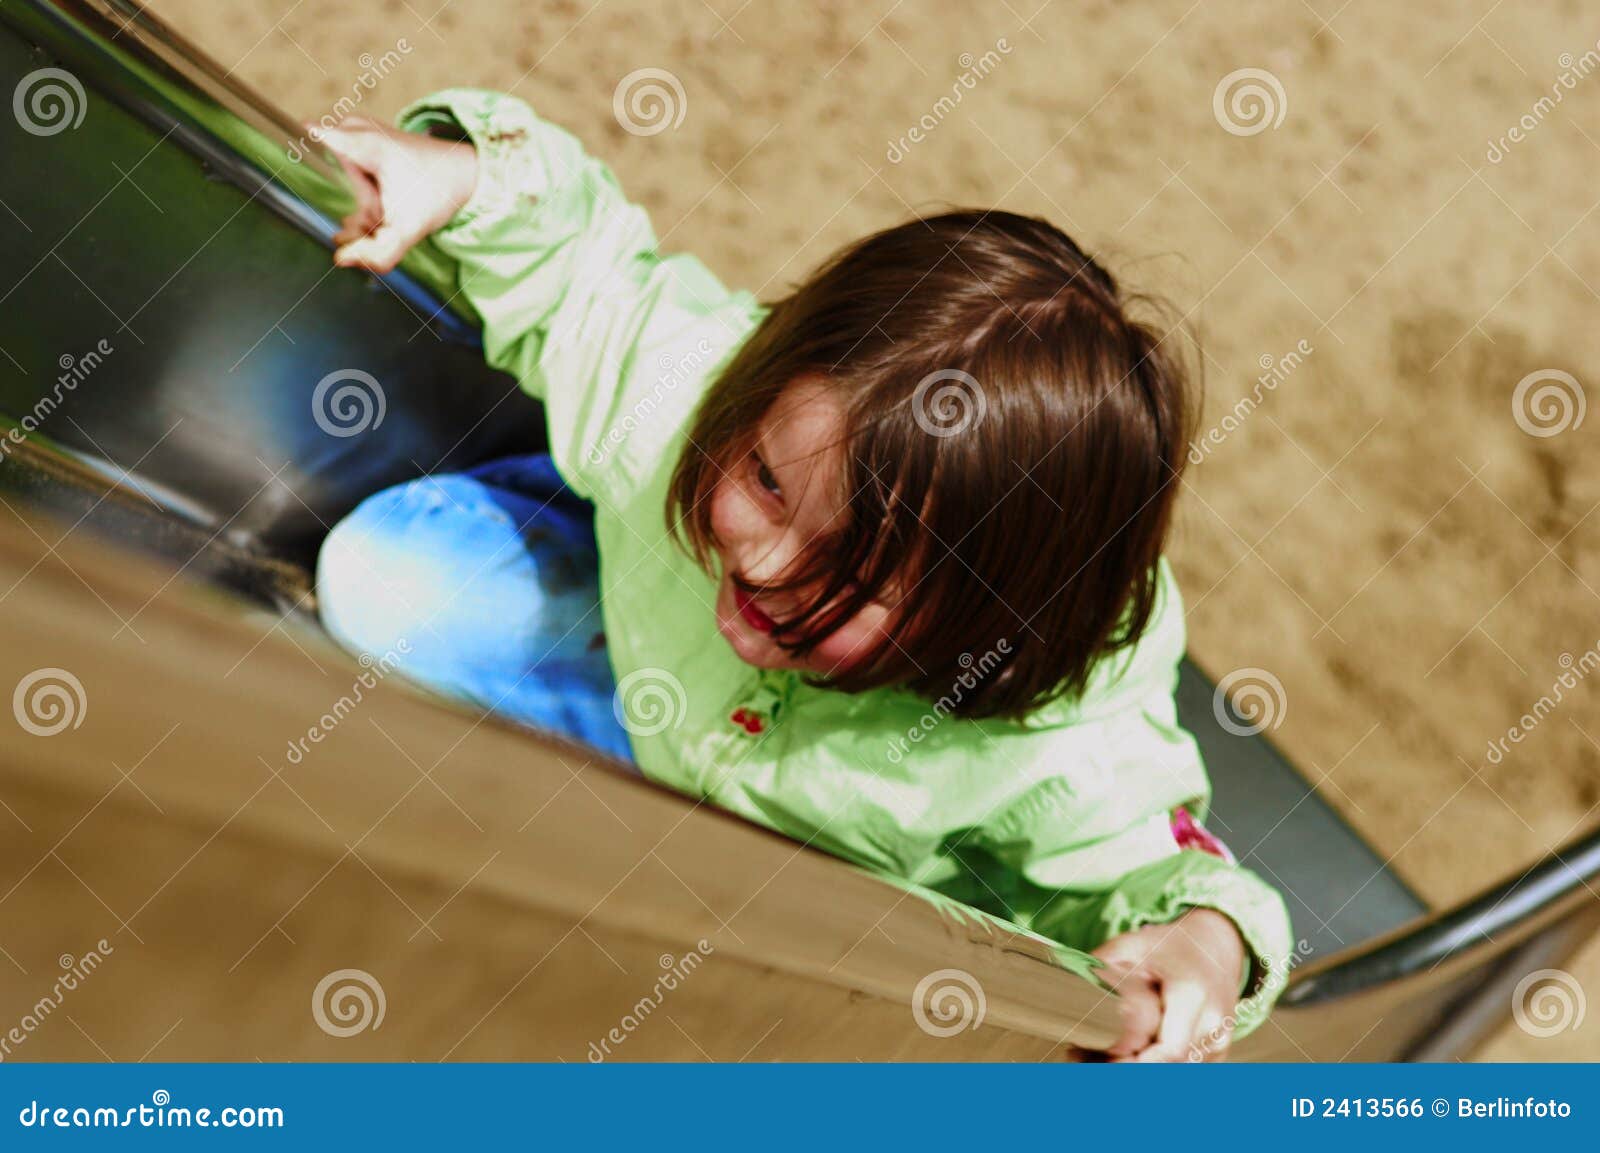 girl climbing chute